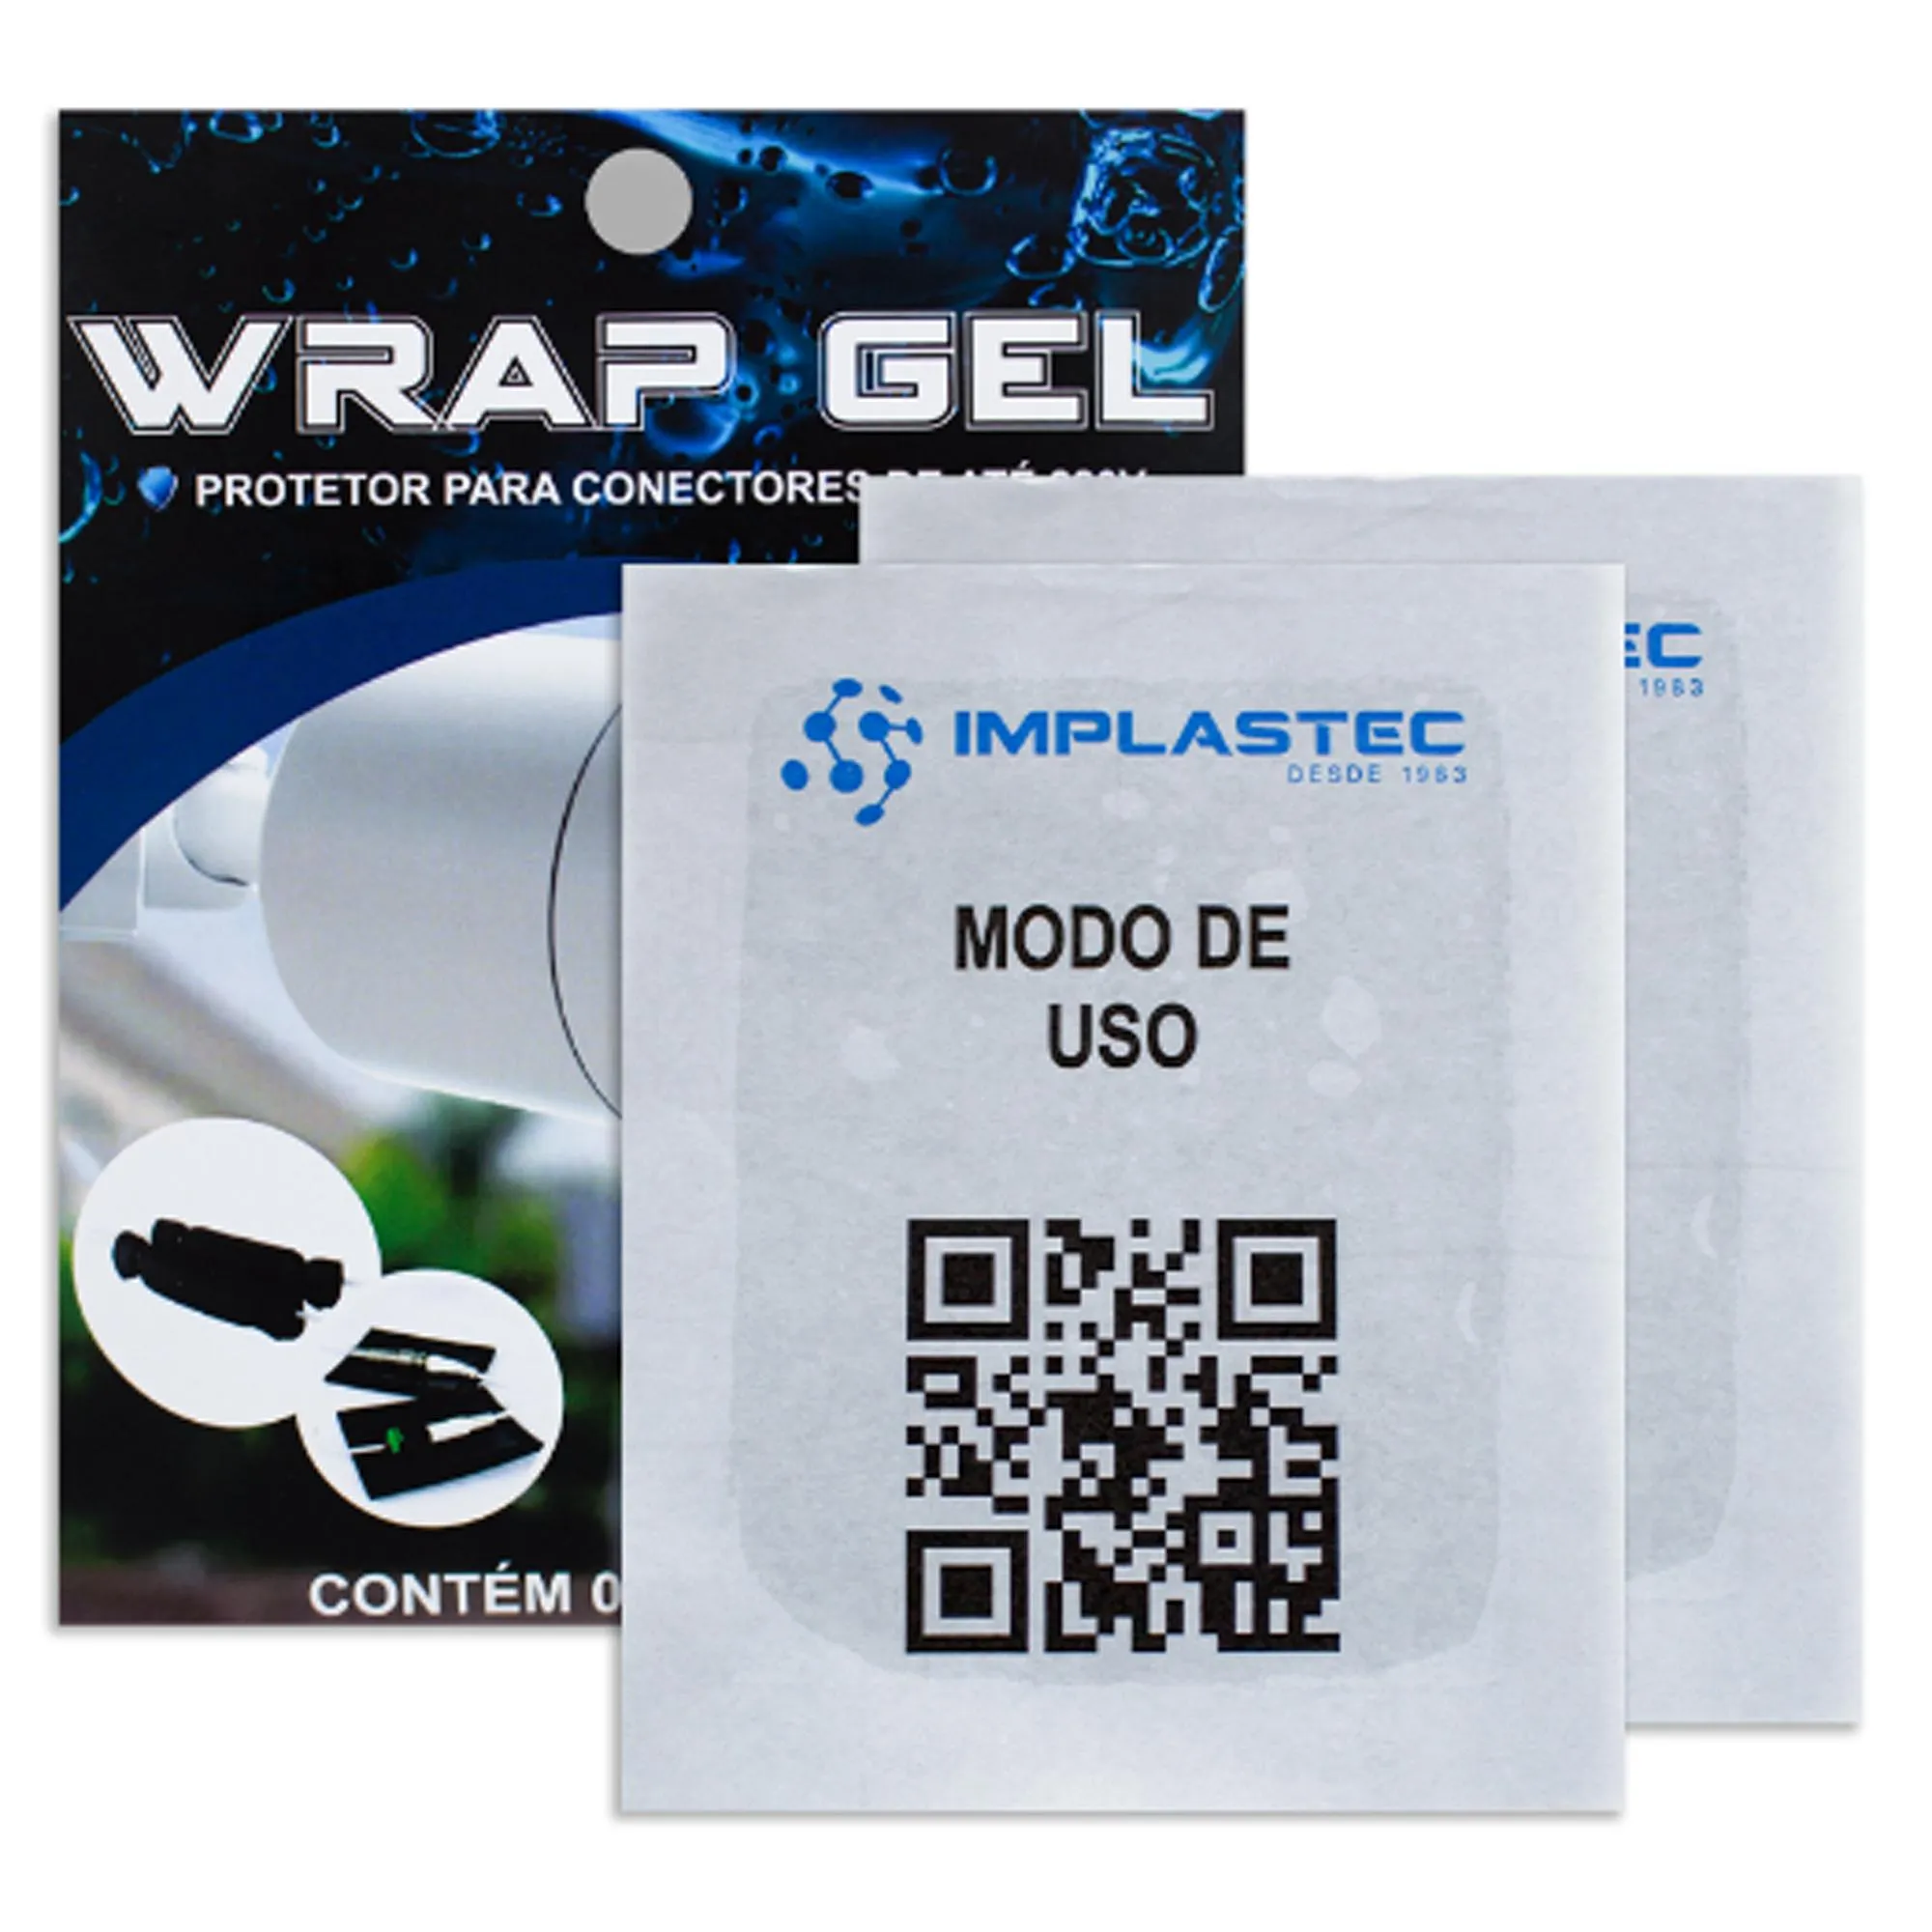 Gel Protetor Para Conectores Wrap Implastec por 20,99 à vista no boleto/pix ou parcele em até 1x sem juros. Compre na loja Mundomax!